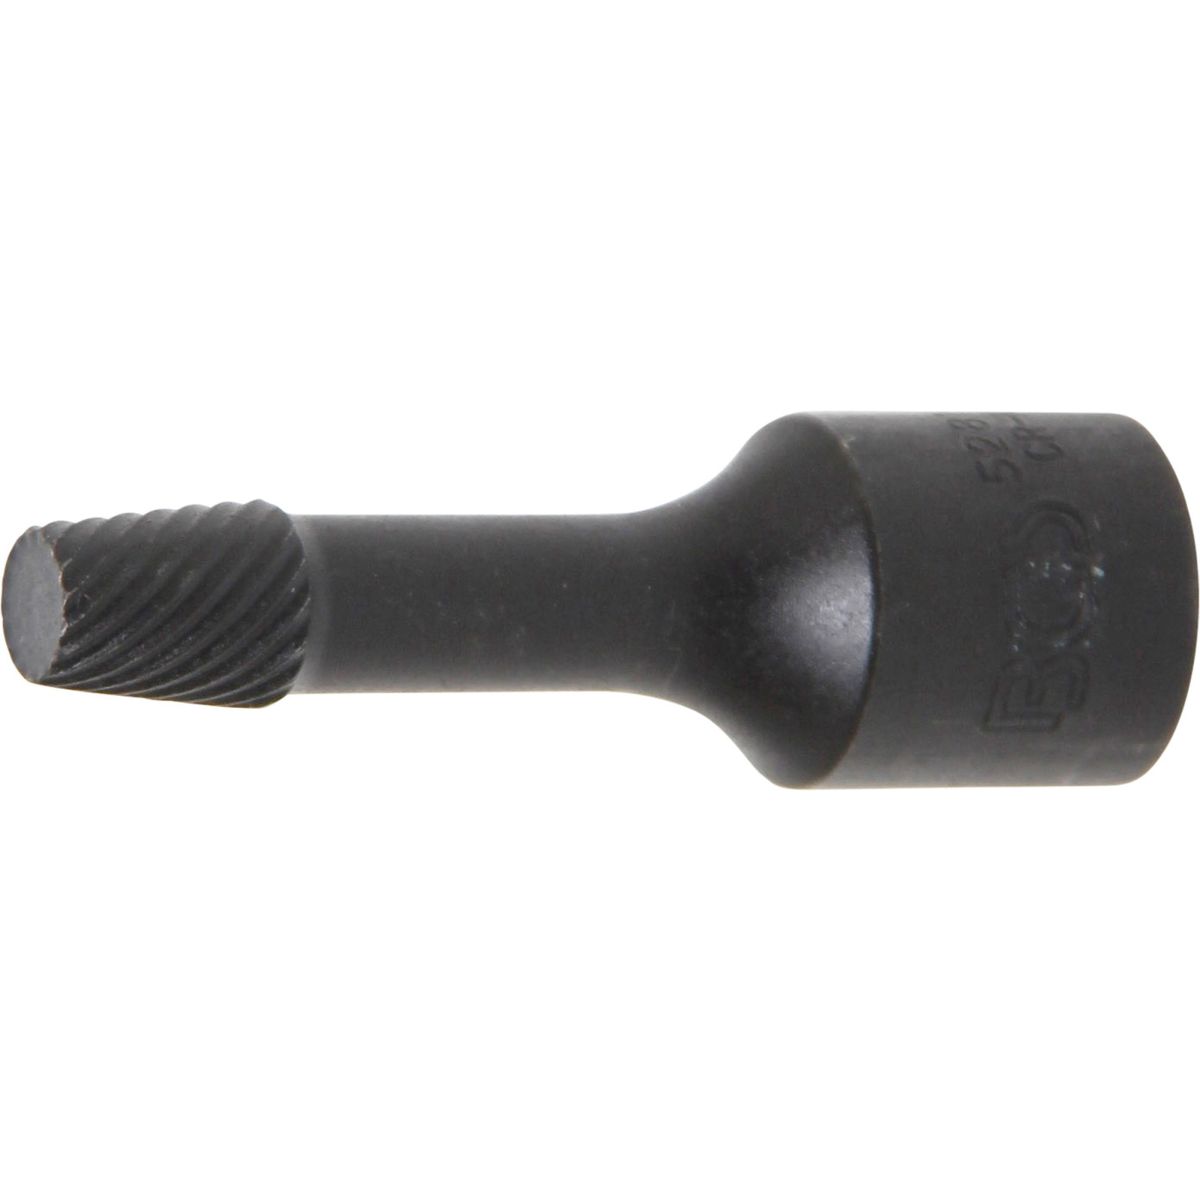 Spiral-Profil-Steckschlüssel-Einsatz / Schraubenausdreher | Antrieb Innenvierkant 10 mm (3/8") | 8 mm